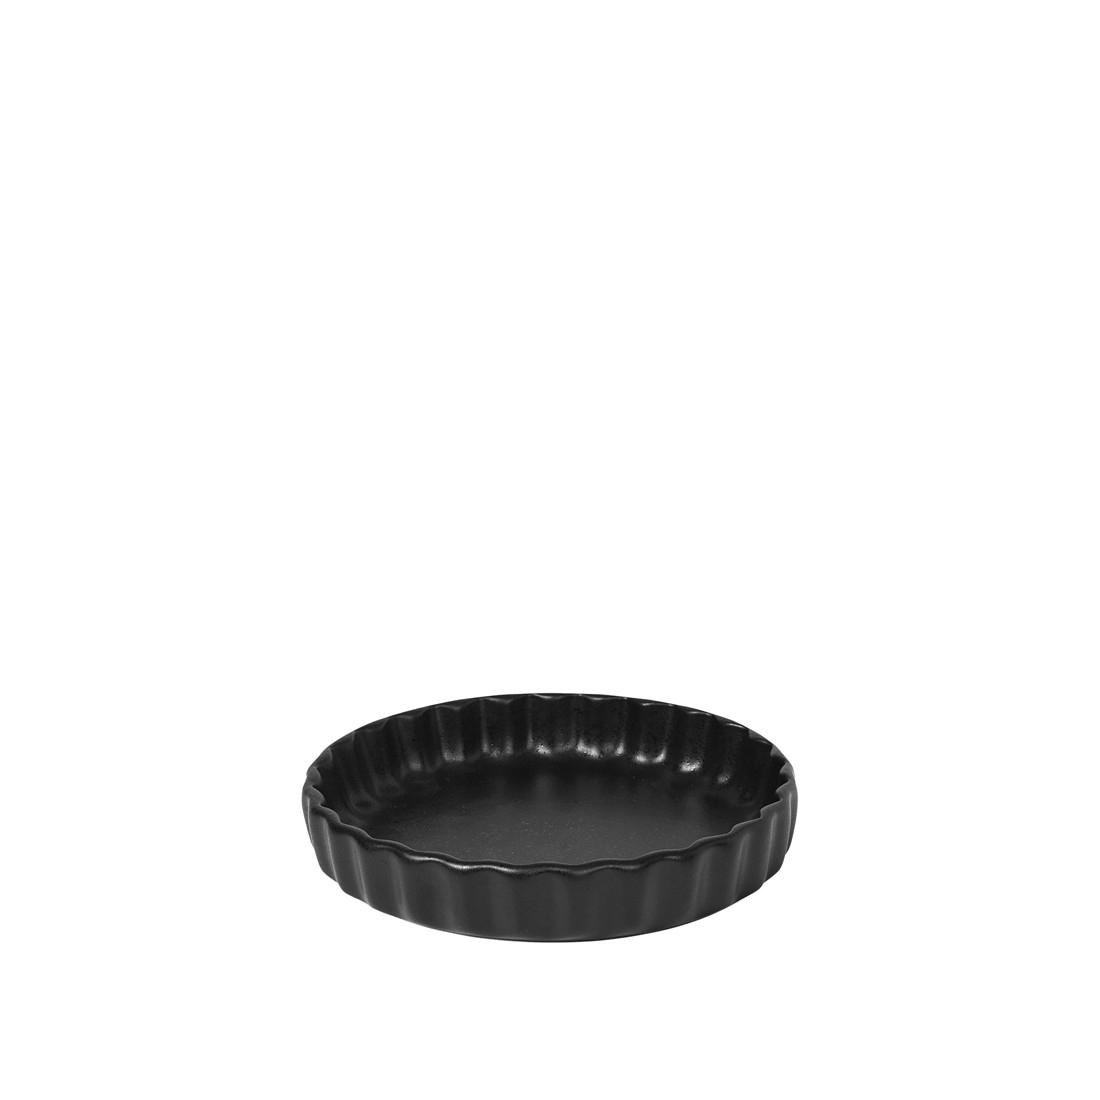 Kameninová zapékací forma na koláč průměr 18 cm Broste VIG  - černá